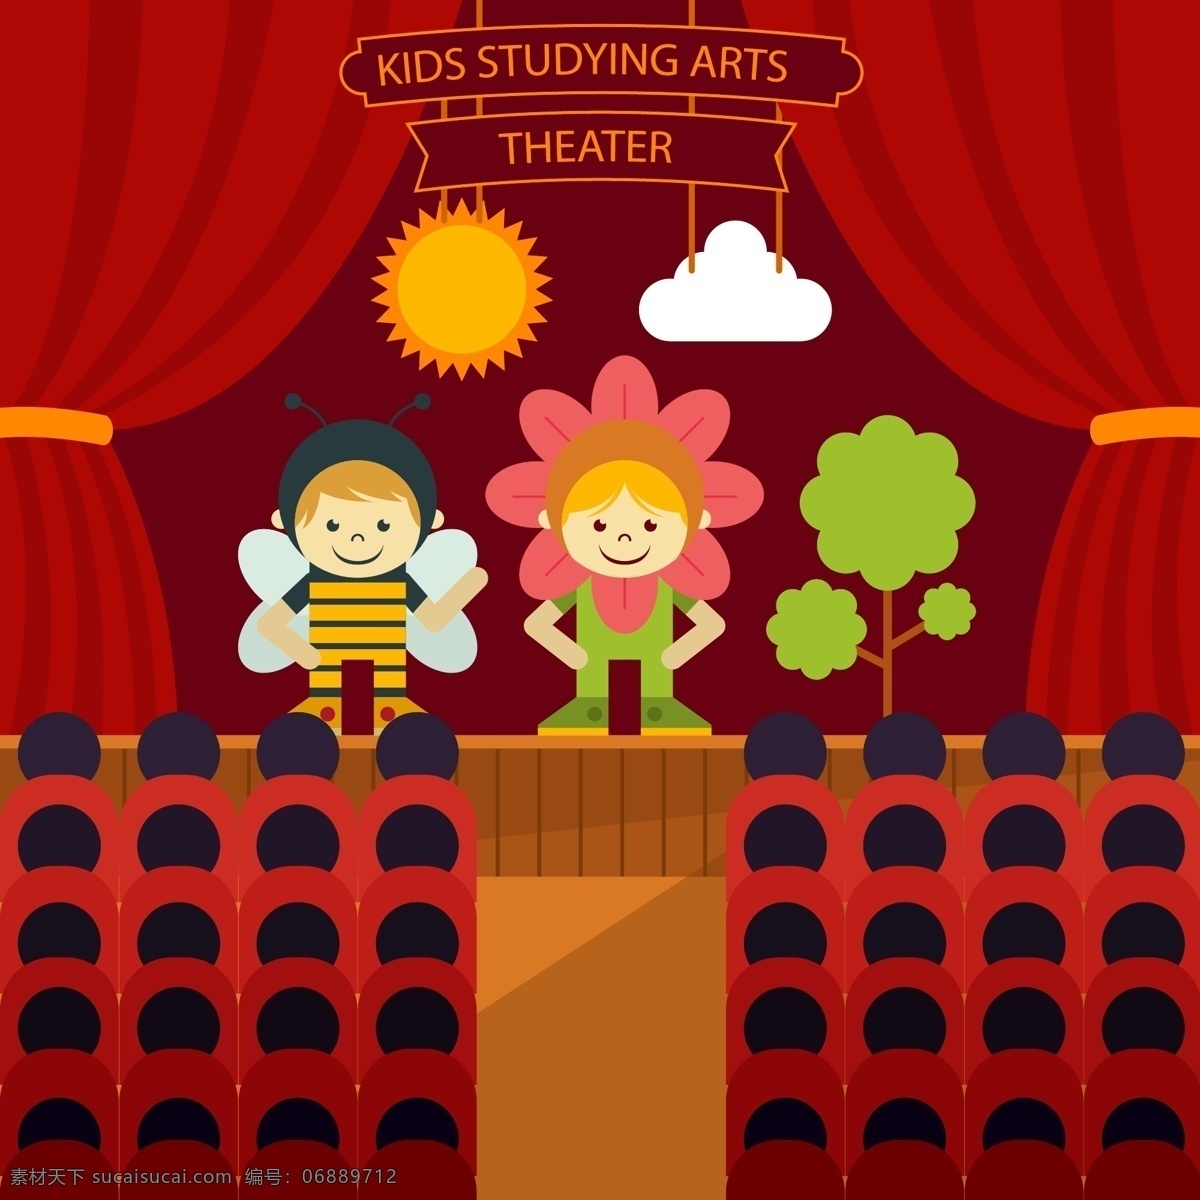 卡通 少儿 表演 插画 矢量 太阳 花朵 蜜蜂 云朵 树木 观众席 幕布 少儿表演 舞台 孩子 舞台剧 文化艺术 节日庆祝